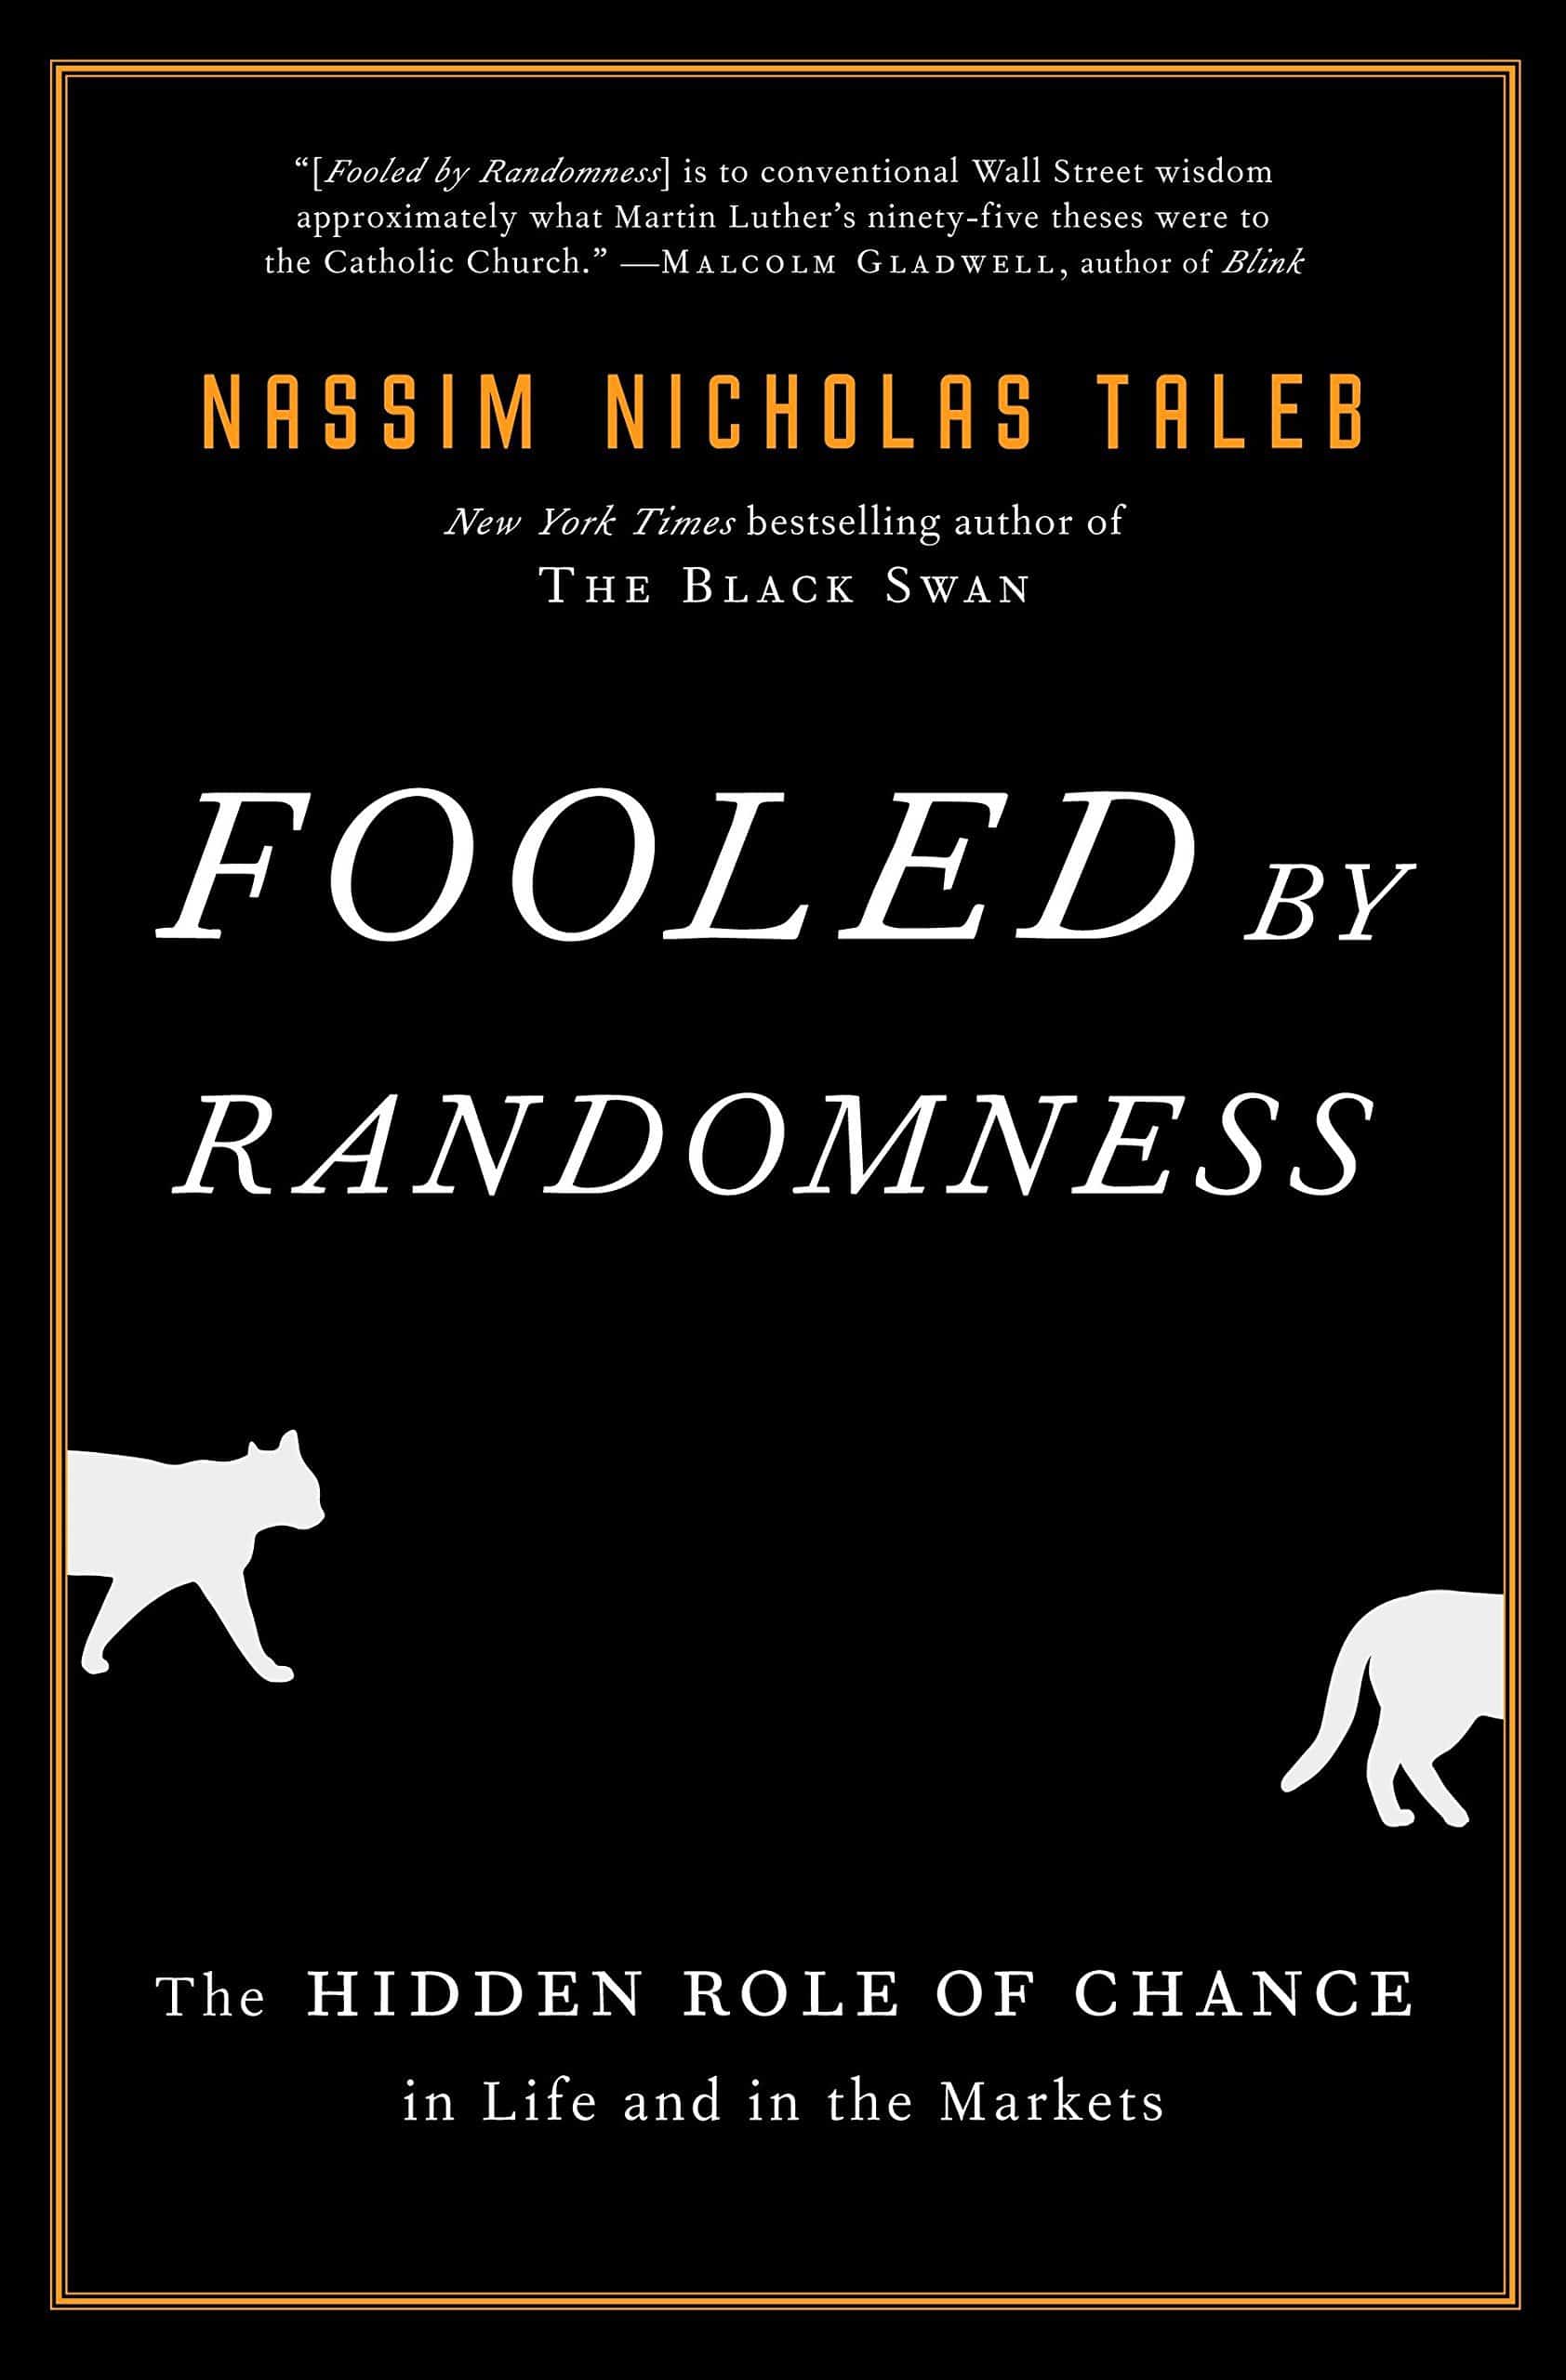 Best self help book - Fooled by Randomness by Nassim Nicholas Taleb